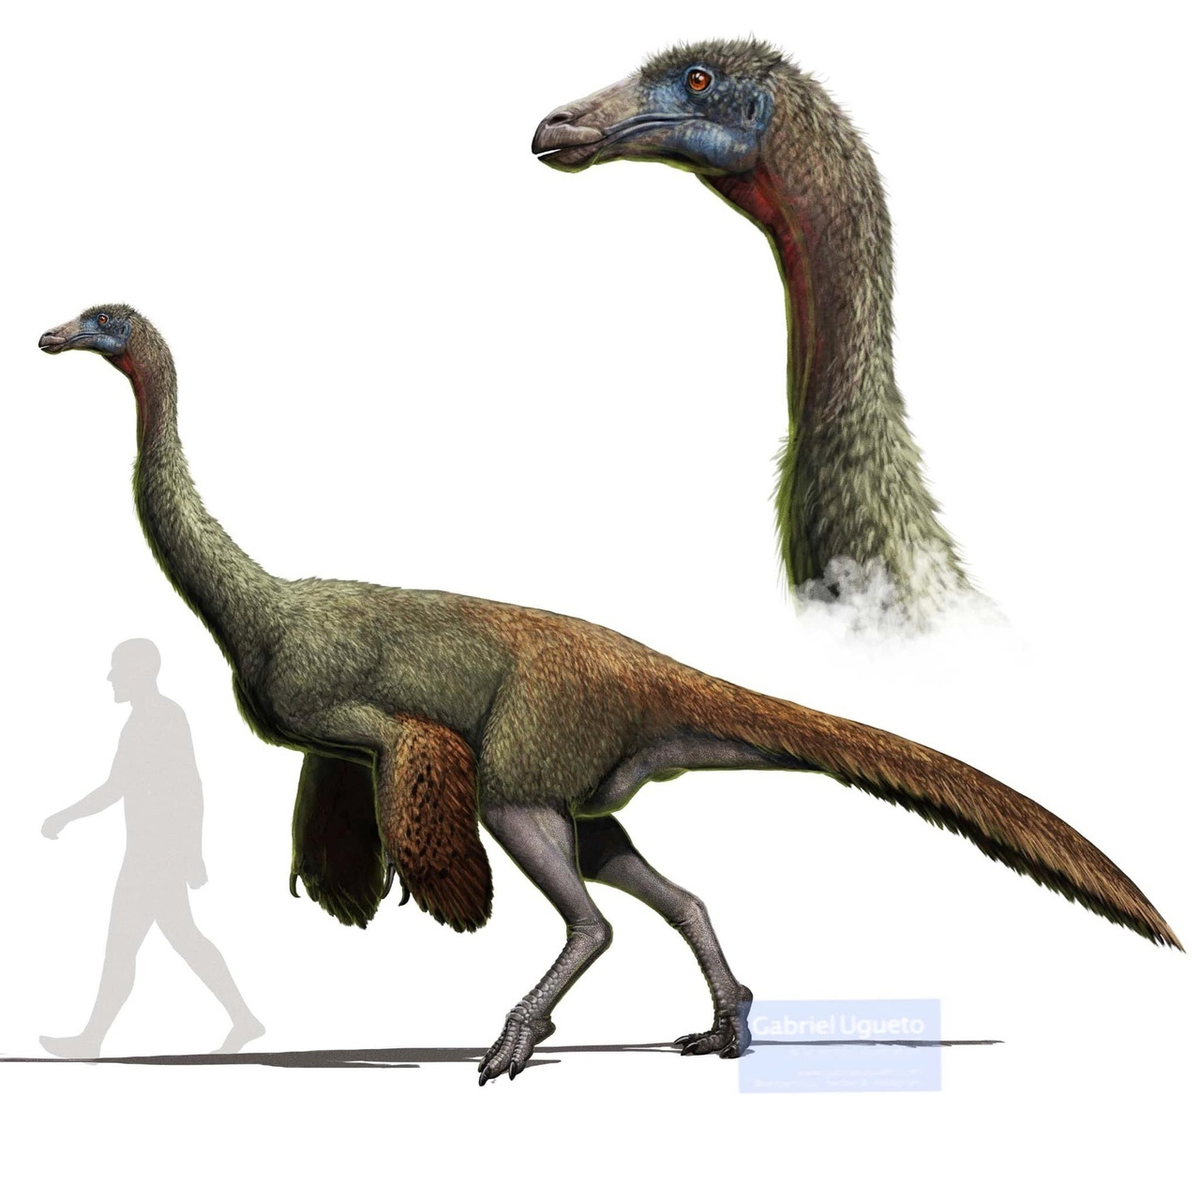 Галлимим: Дино-страус, развивавший скорость в 56 км/ч. Один из самых быстрых динозавров за всю историю!